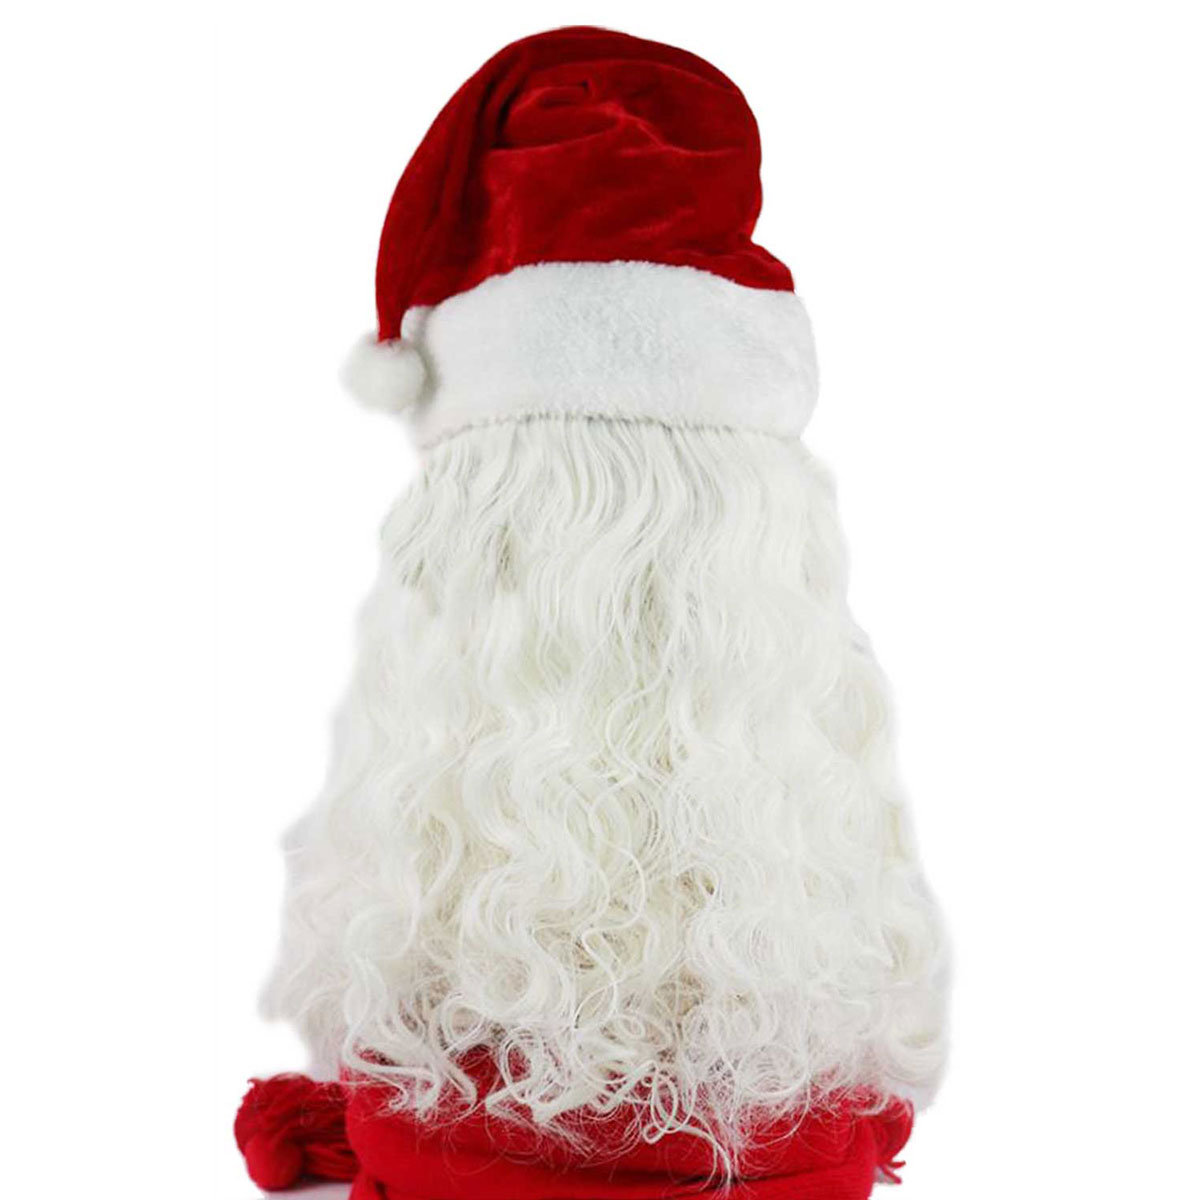 楽天市場 サンタ 髭 ウィッグ コスプレ サンタのひげ かつら セット クリスマス サンタクロース 仮装 白 ヒゲ コスチューム いいひ 楽天市場店